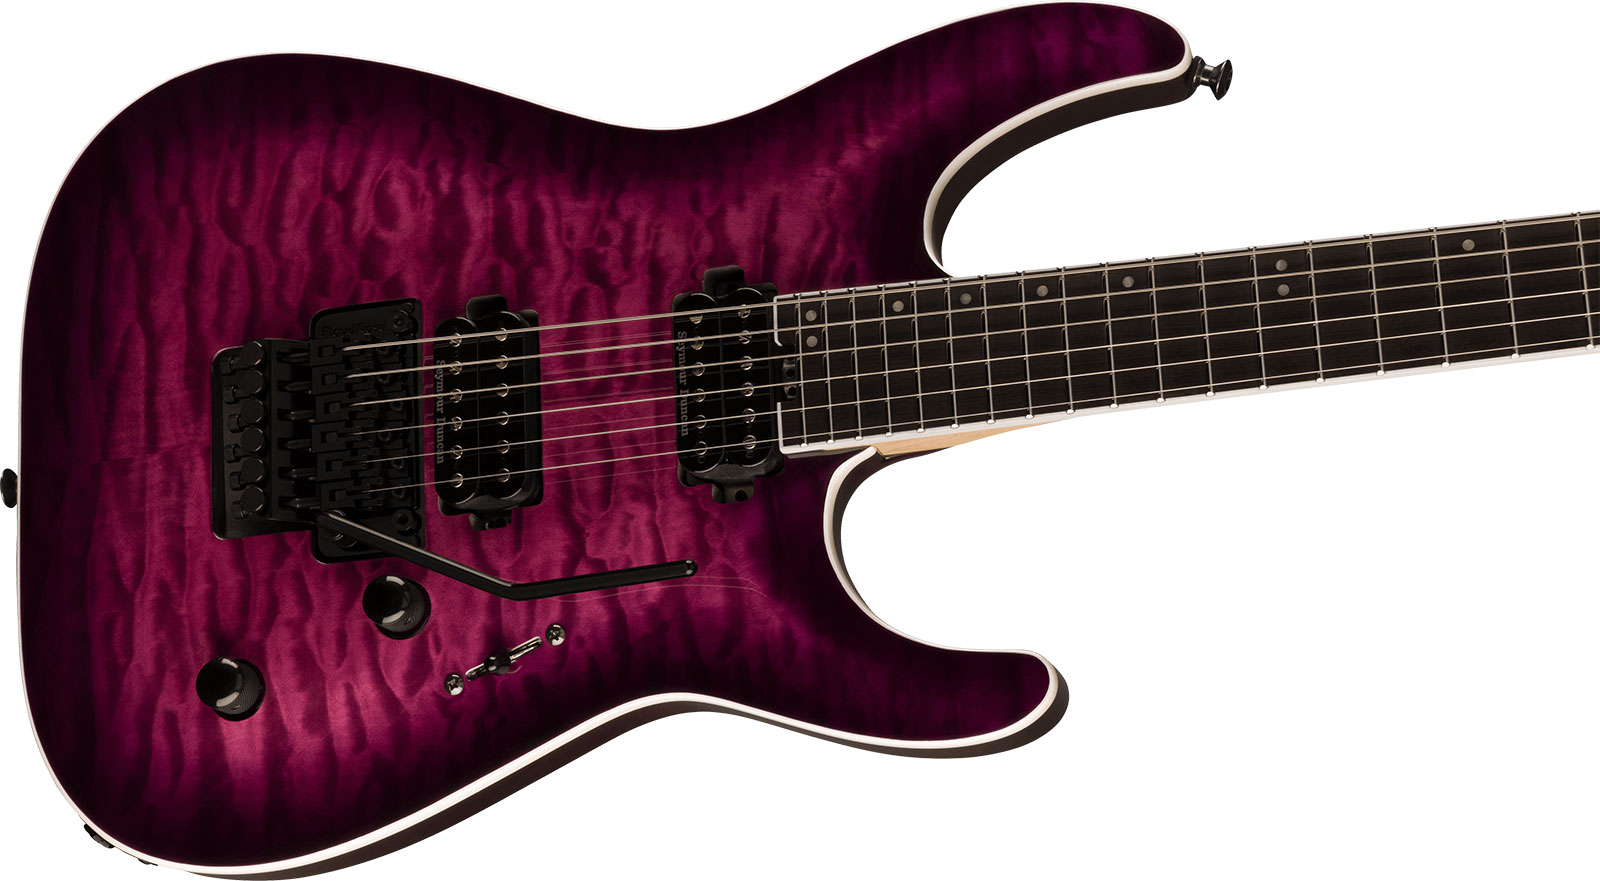 Jackson Dinky Dkaq Pro Plus 2h Seymour Duncan Fr Eb - Transparent Purple Burst - Str shape electric guitar - Variation 2